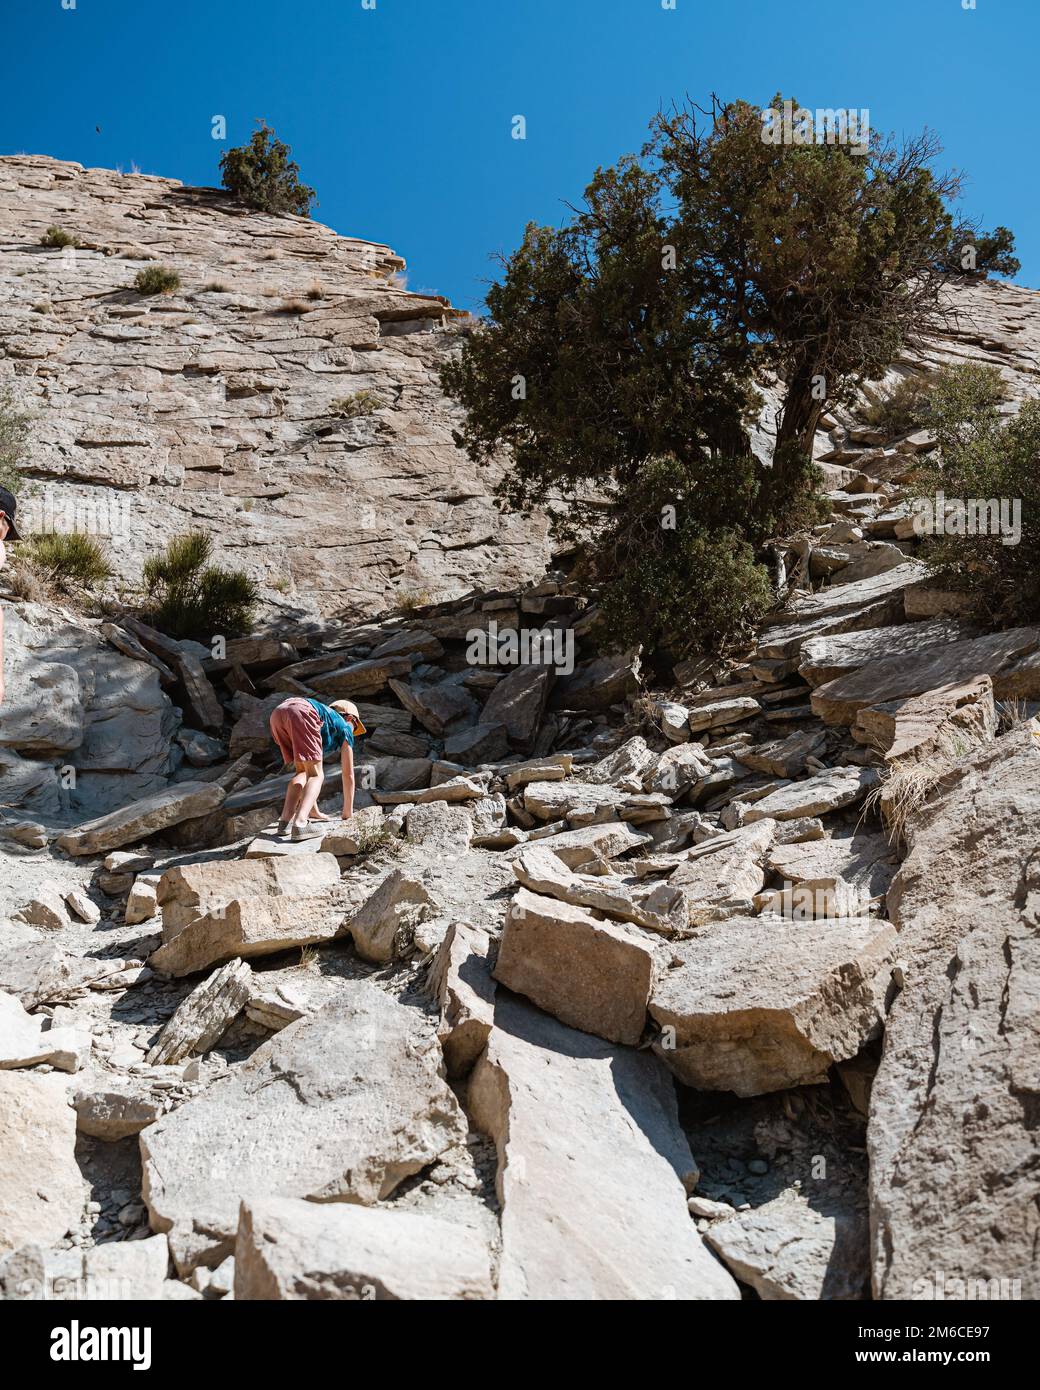 Jeune garçon grimpant sur un terrain rocheux en randonnée Banque D'Images